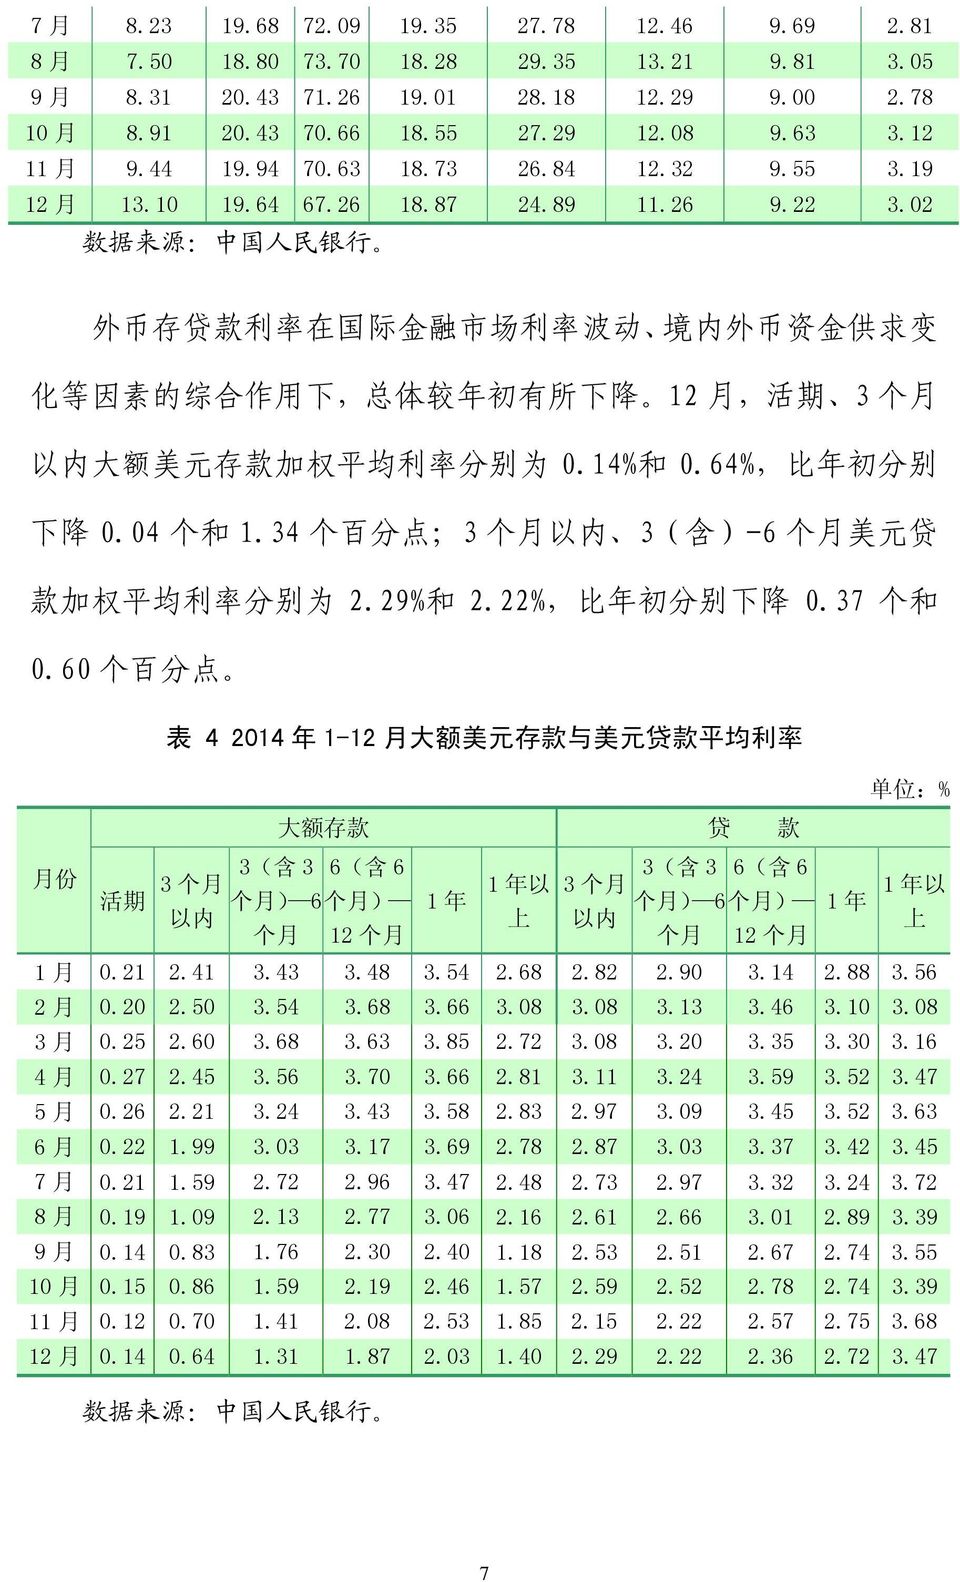 02 数 据 来 源 : 中 国 人 民 银 行 外 币 存 贷 款 利 率 在 国 际 金 融 市 场 利 率 波 动 境 内 外 币 资 金 供 求 变 化 等 因 素 的 综 合 作 用 下, 总 体 较 年 初 有 所 下 降 12 月, 活 期 3 个 月 以 内 大 额 美 元 存 款 加 权 平 均 利 率 分 别 为 0.14% 和 0.64%, 比 年 初 分 别 下 降 0.